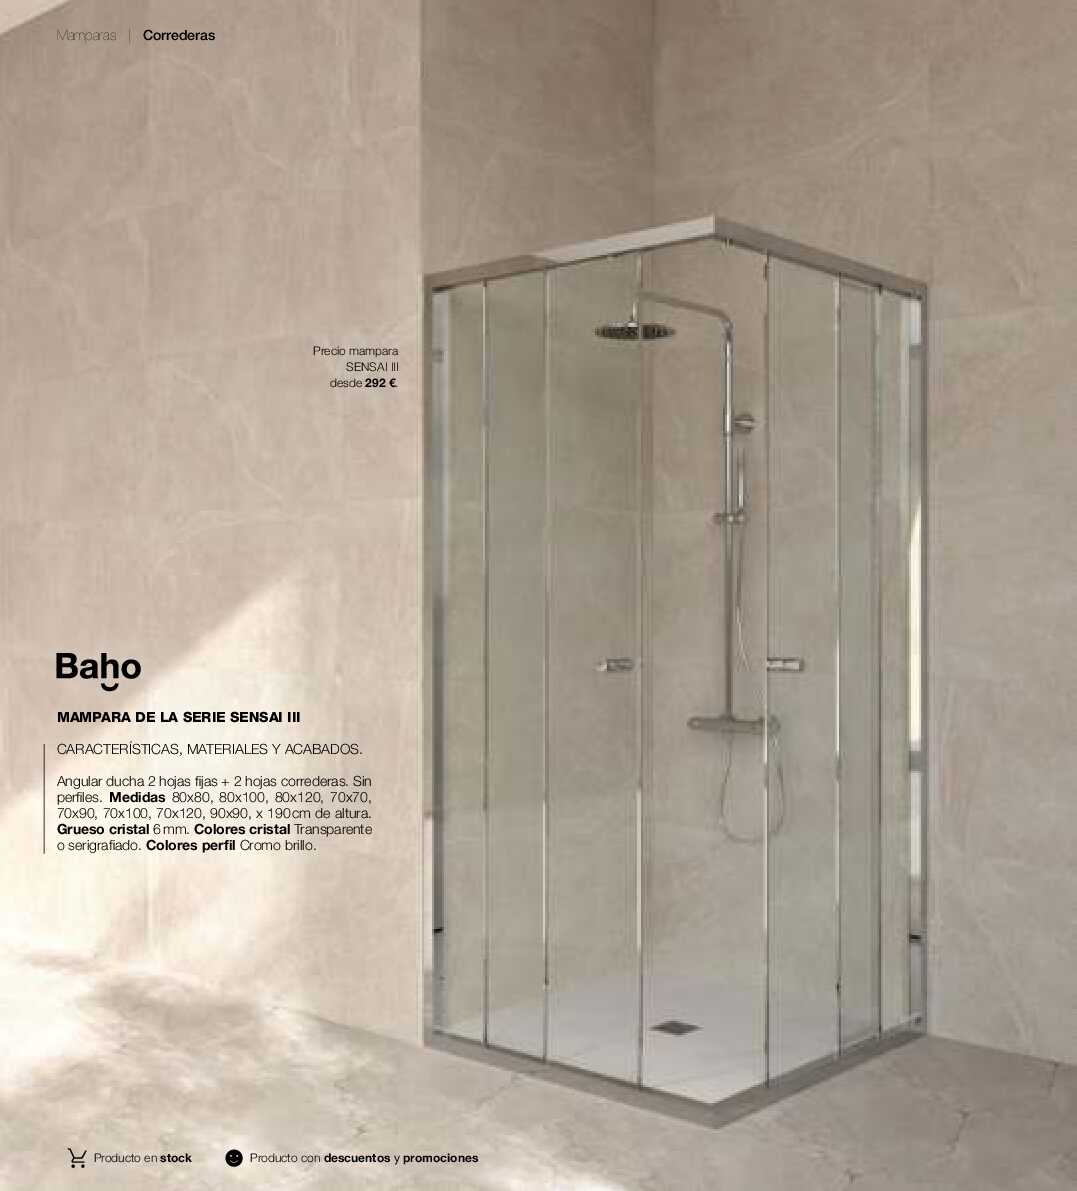 Catálogo de baños Gamma. Página 263